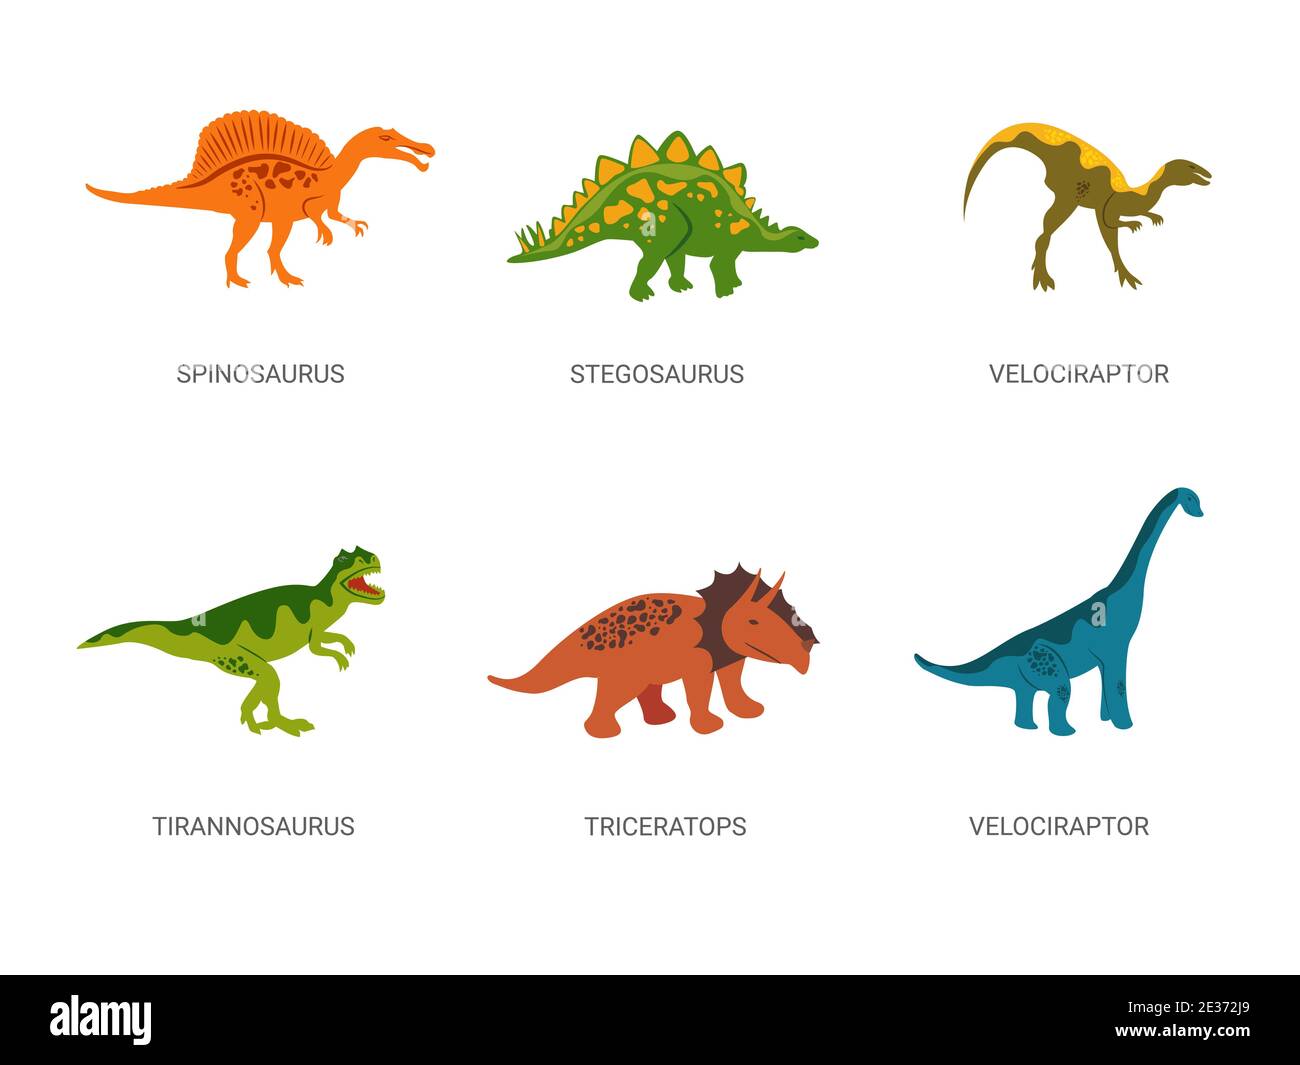 Dinosaures de la période jurassique. Spinosaurus rouge puissant avec stegosaurus herbiveux vert. Illustration de Vecteur